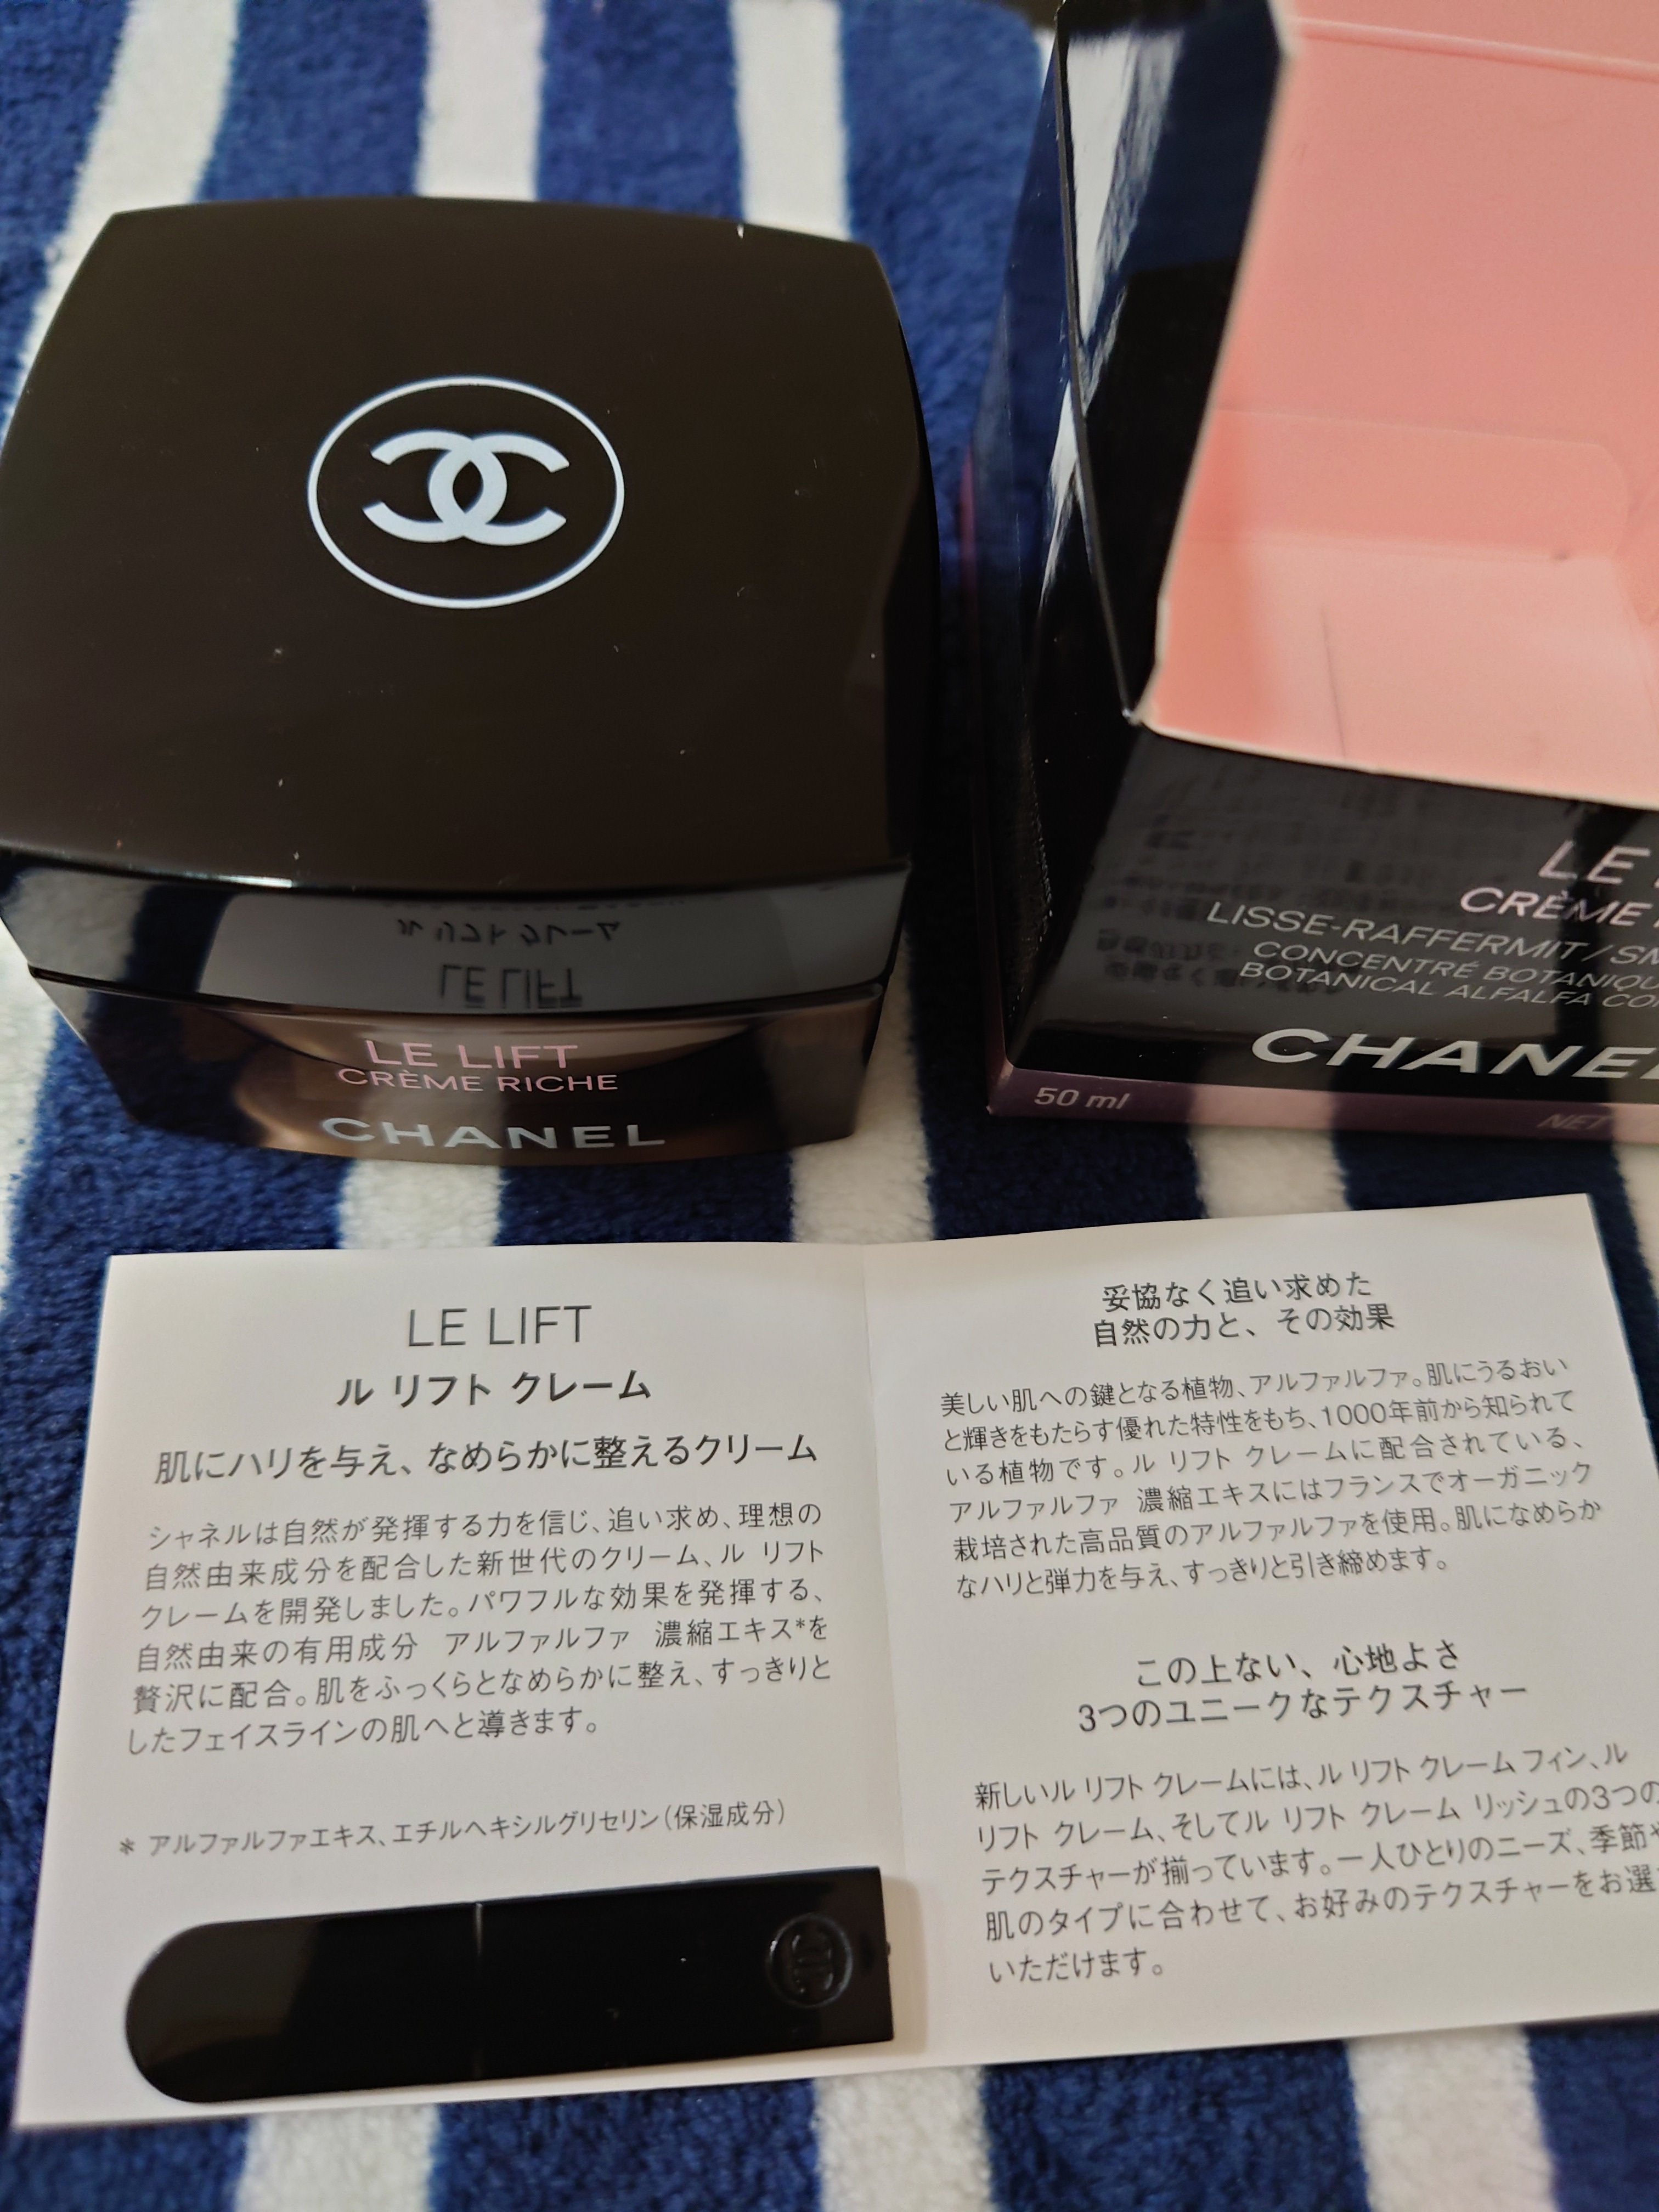 シャネル / ル リフト クレーム リッシュの公式商品情報｜美容・化粧品